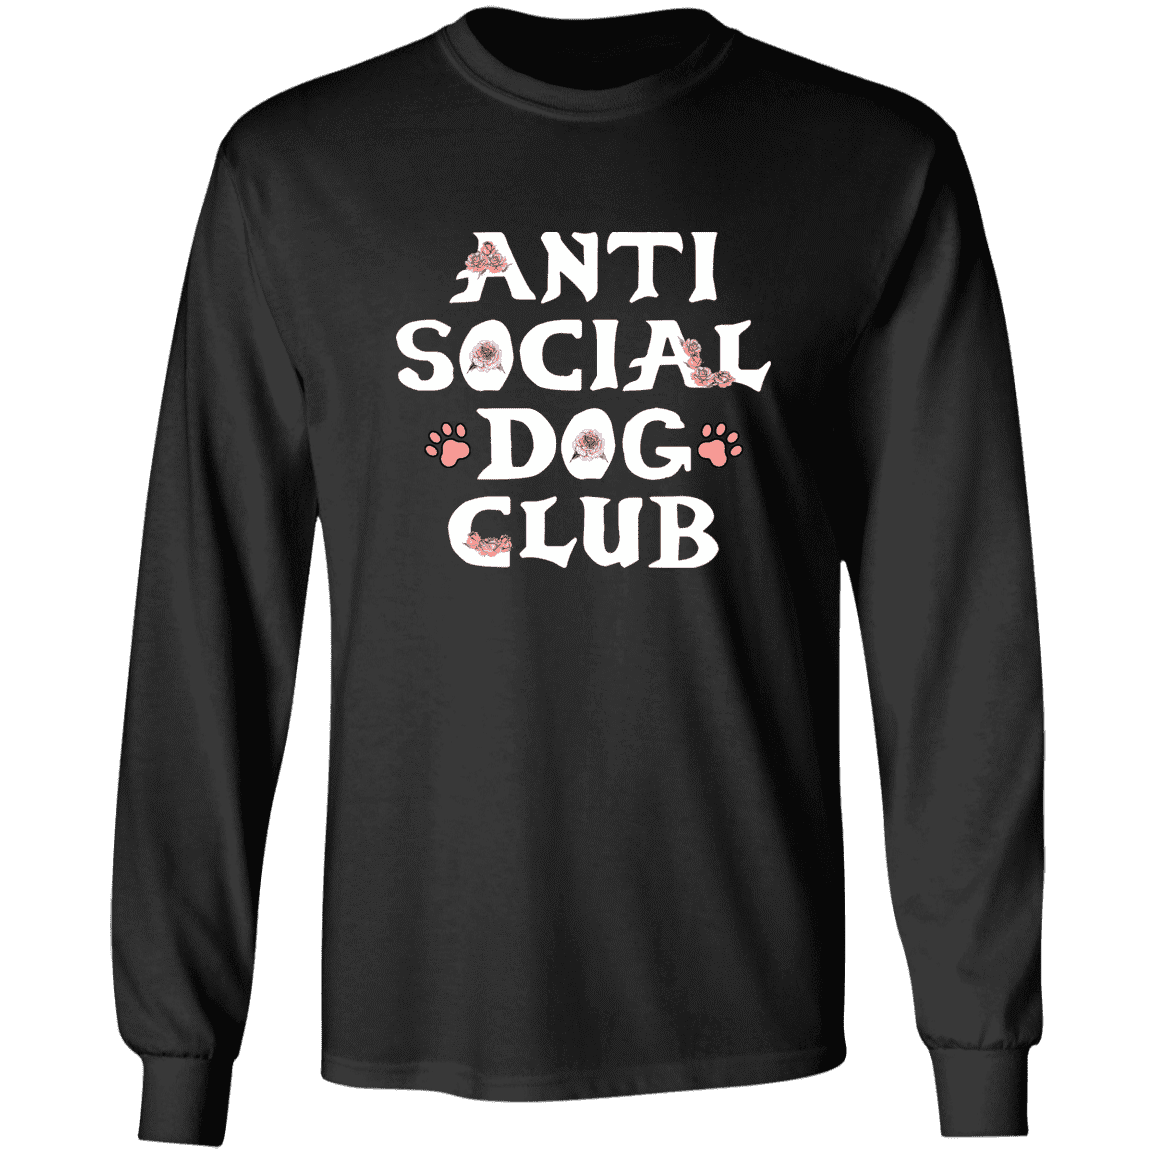 Anti Social Dog Club - Long Sleeve T Shirt.